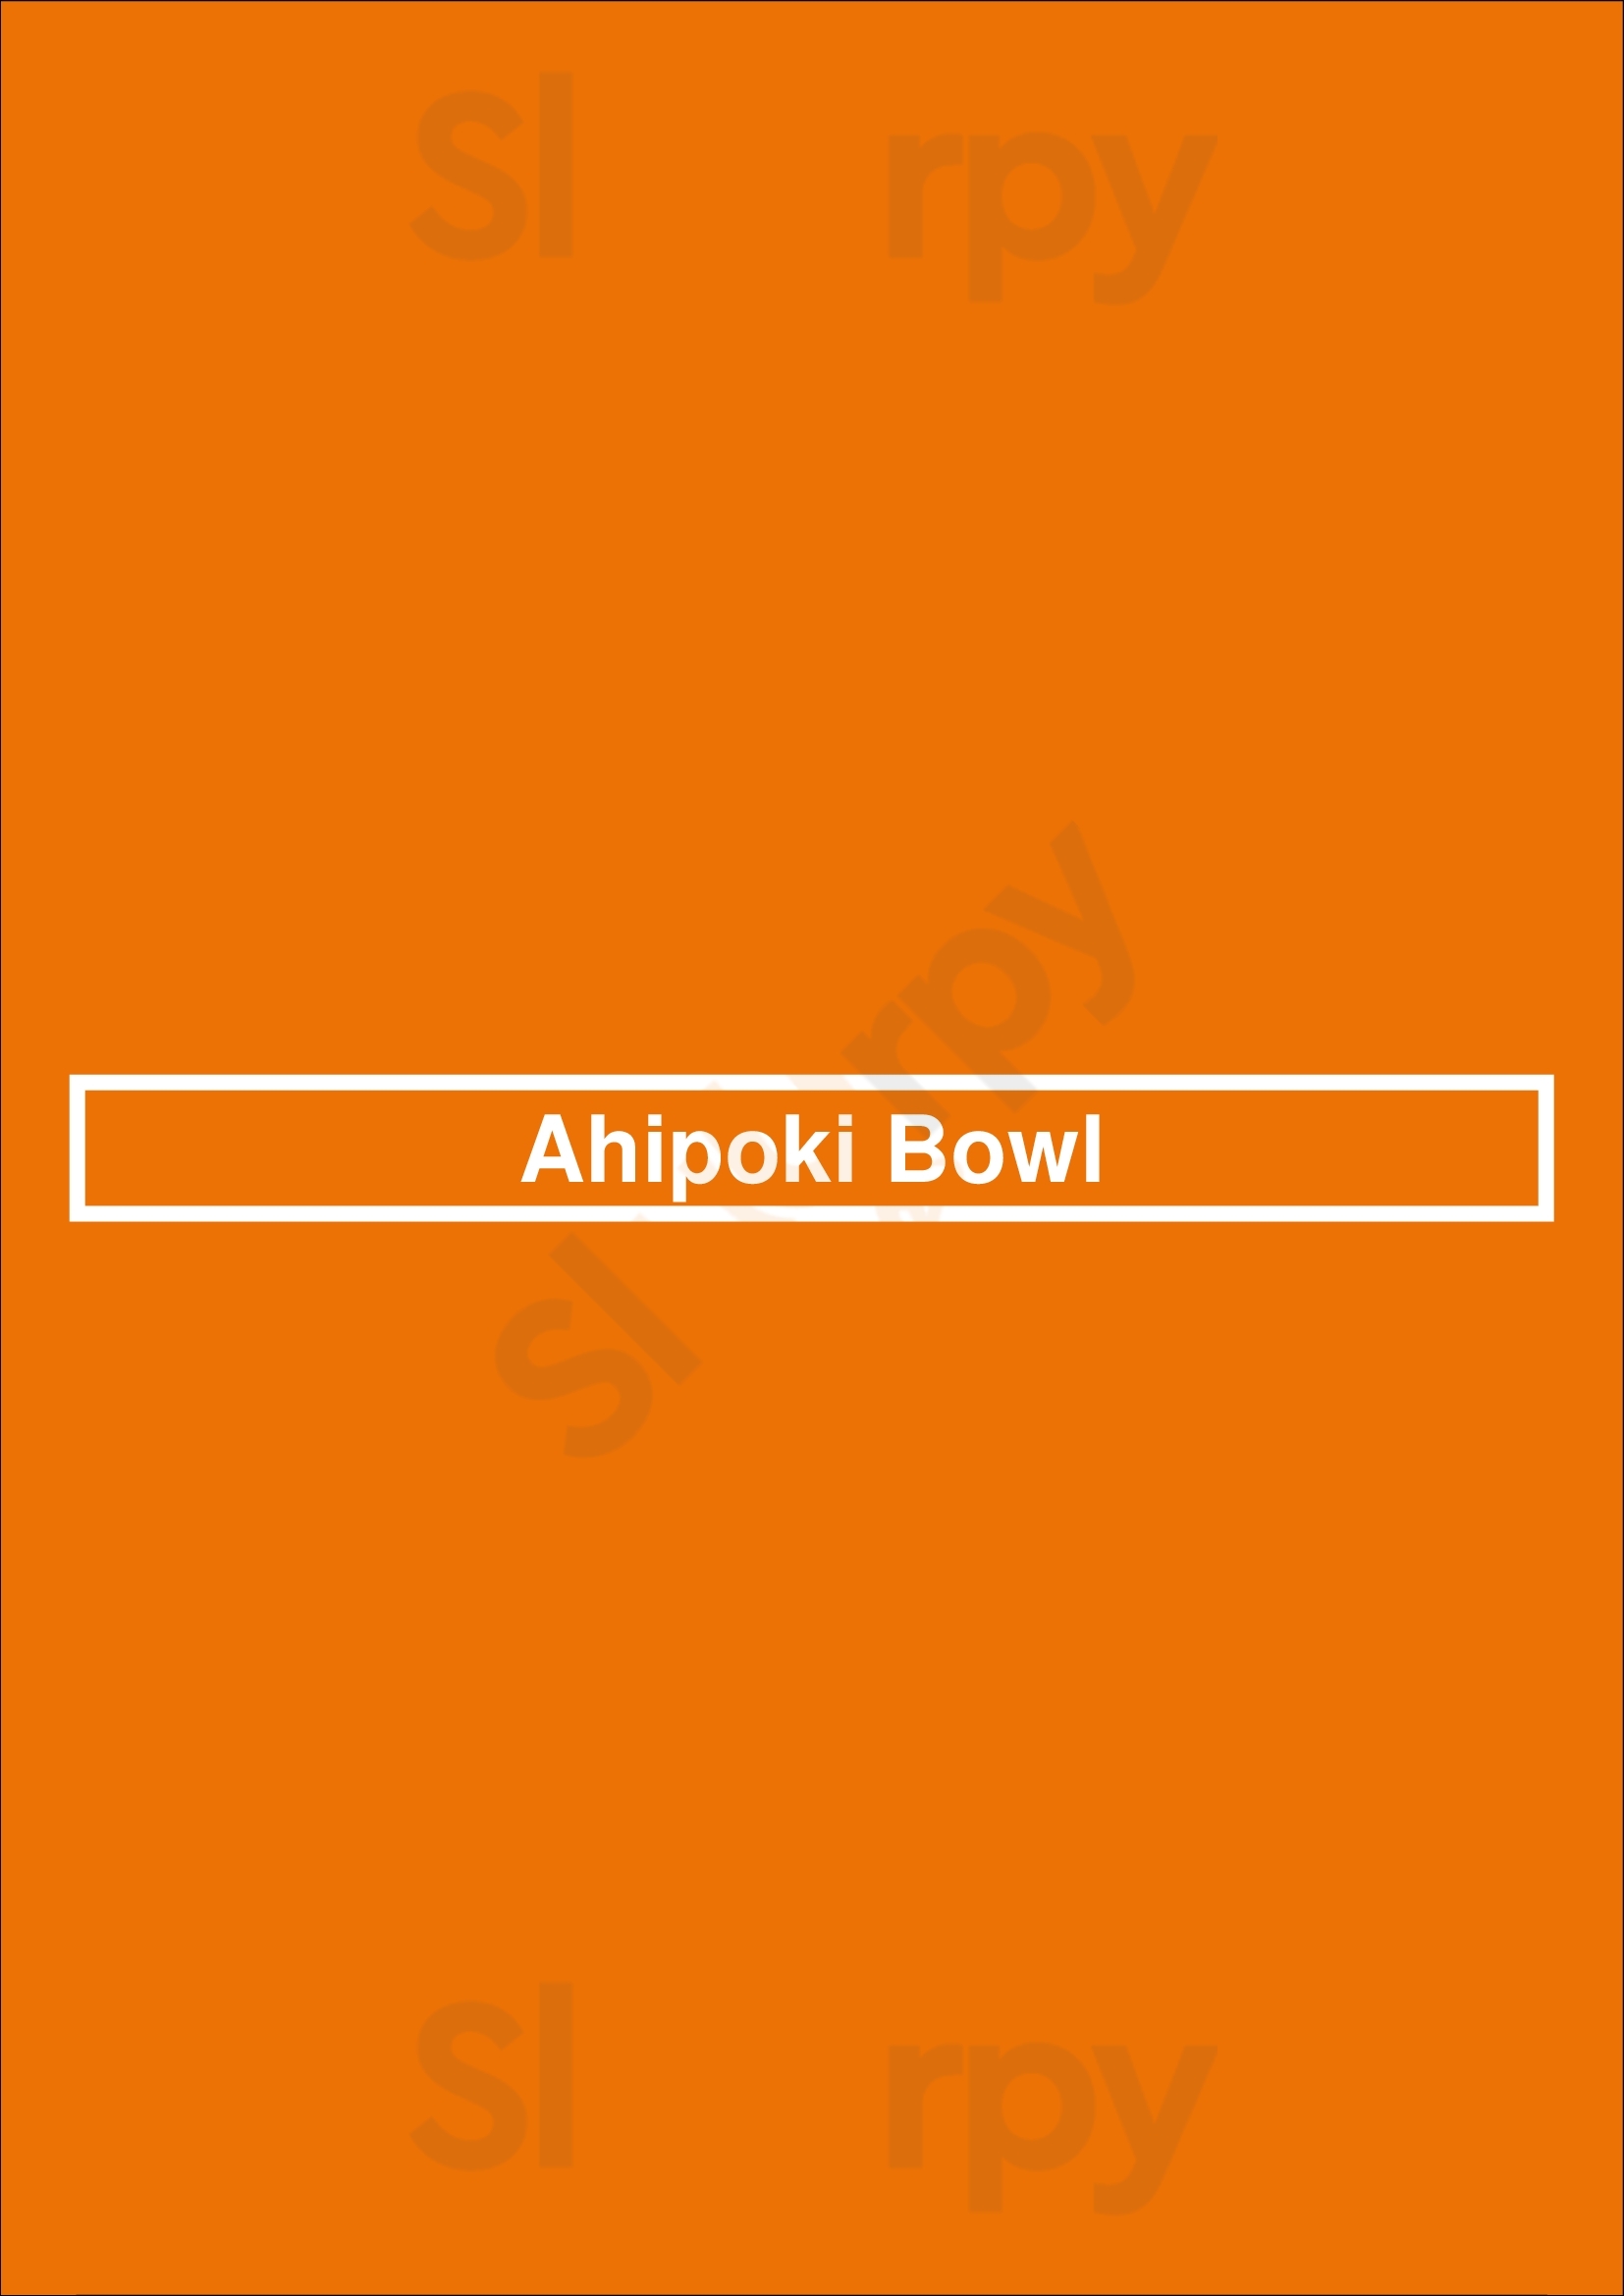 Ahipoki Bowl Scottsdale Menu - 1